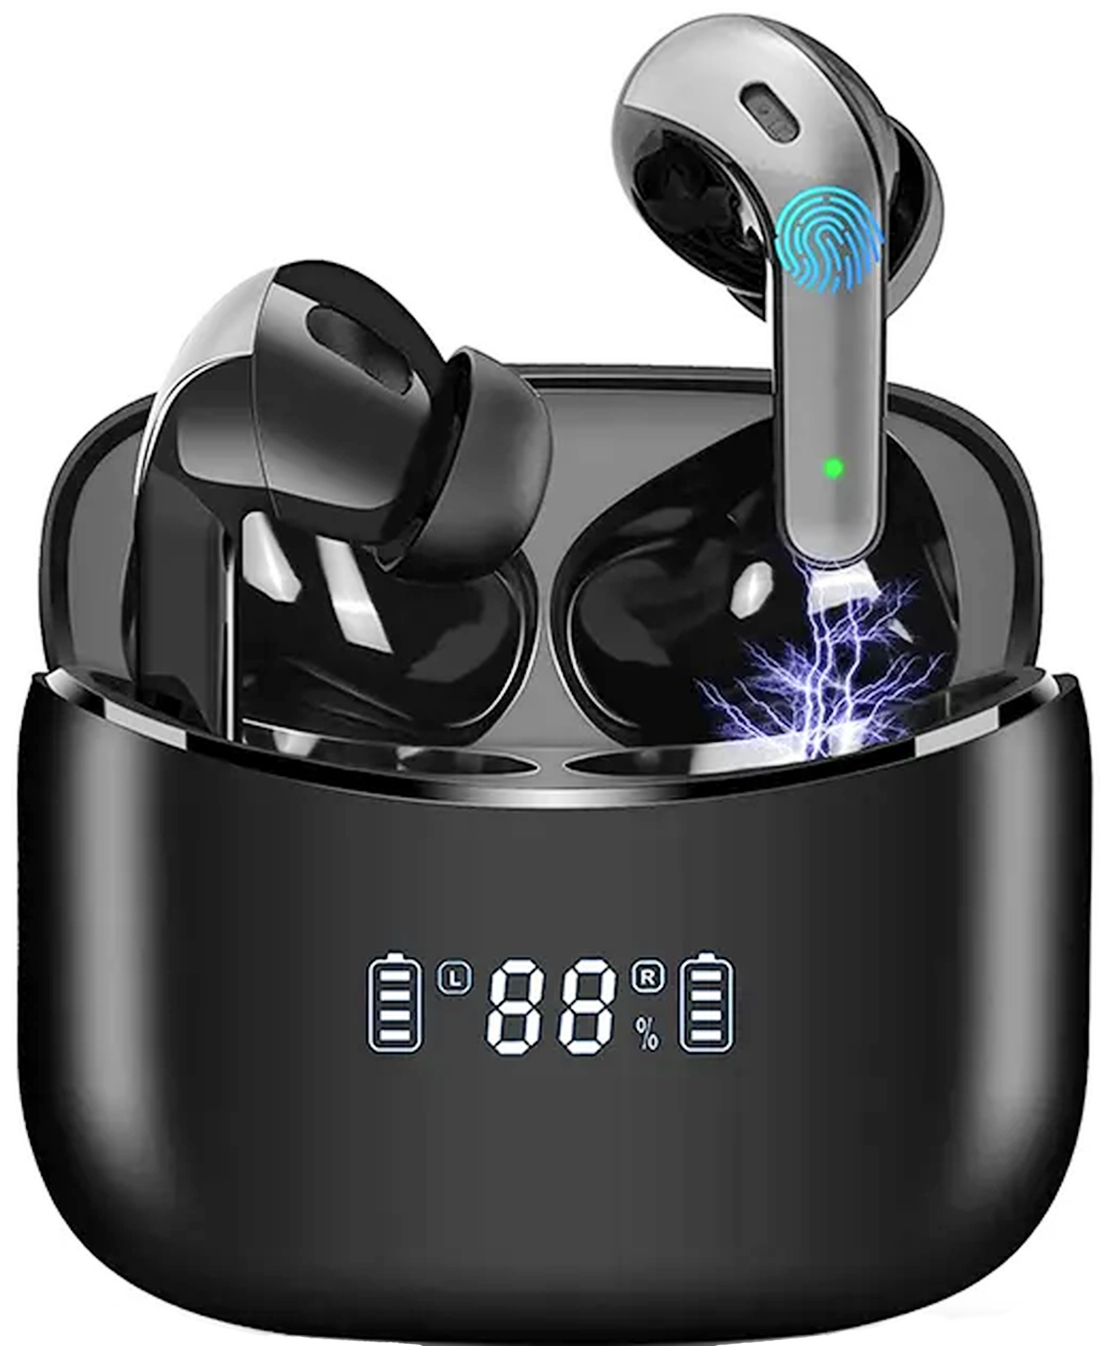 Casti Wireless idealStore XBO Headphone, Autonomie 35 ore, Microfon HD incorporat, Calitate audio Hi-Fi, Bass profund, Noise Cancelling, Afisaj LED, Bluetooth 5.0, Rezistent la Ploaie, Stropi de Apa, Multifunctionale, Ergonomice, Culoare Negru Lucios